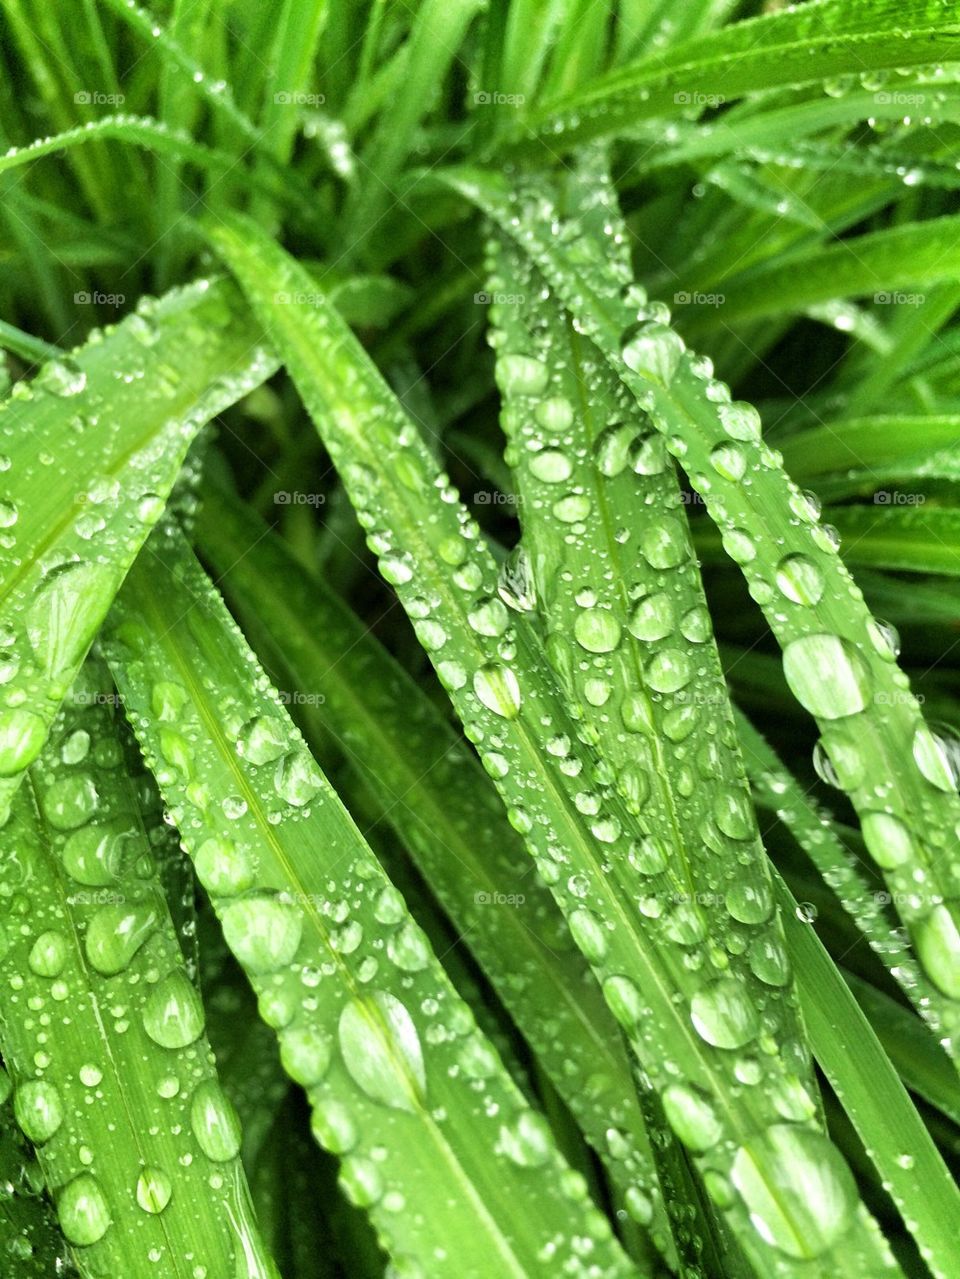 Wet weeds